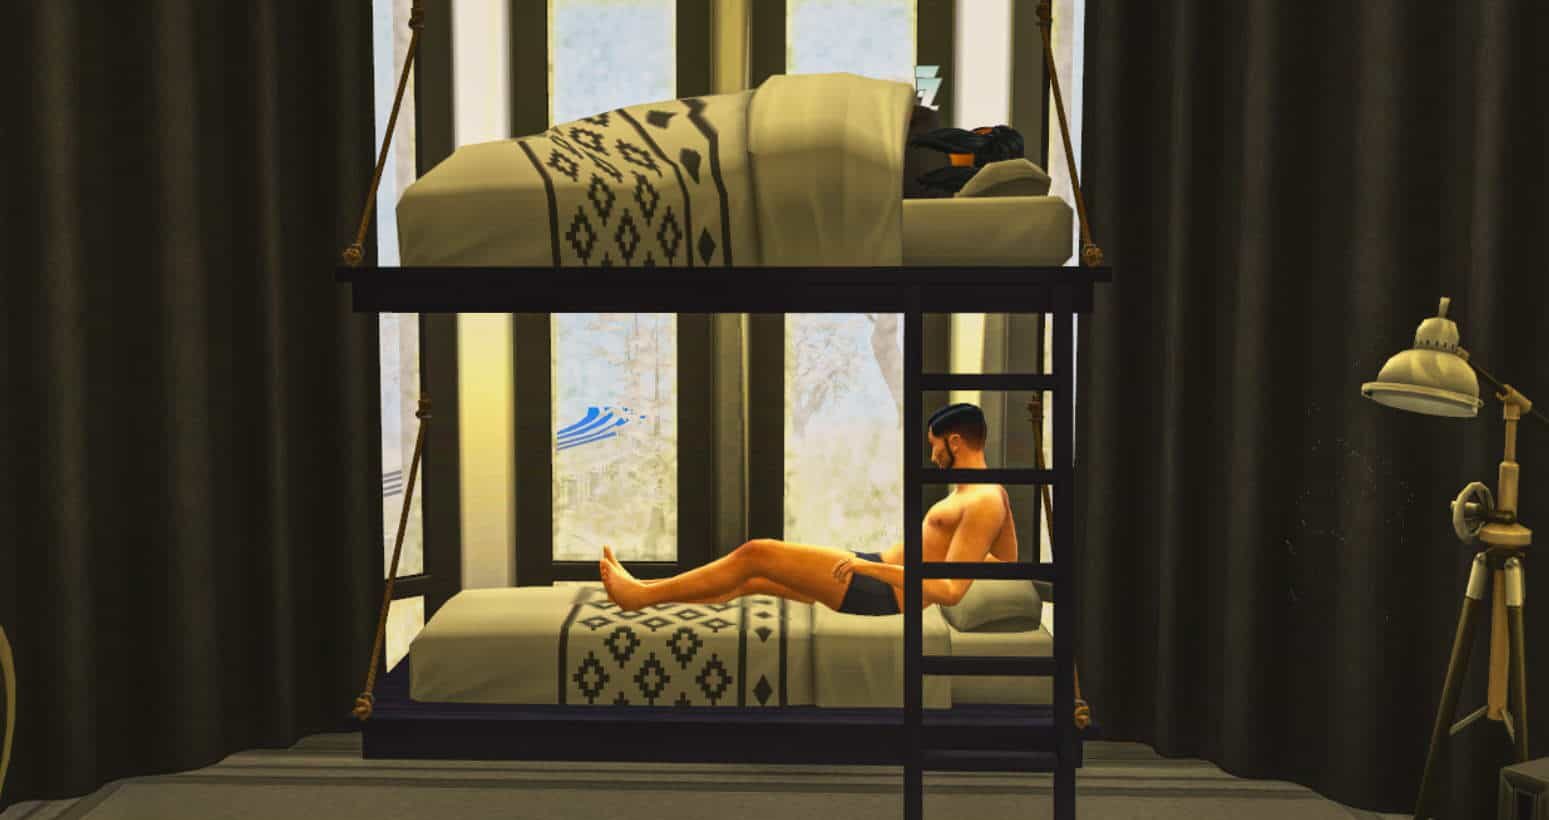 Sims 4 Functional Bunk Beds Cc Set